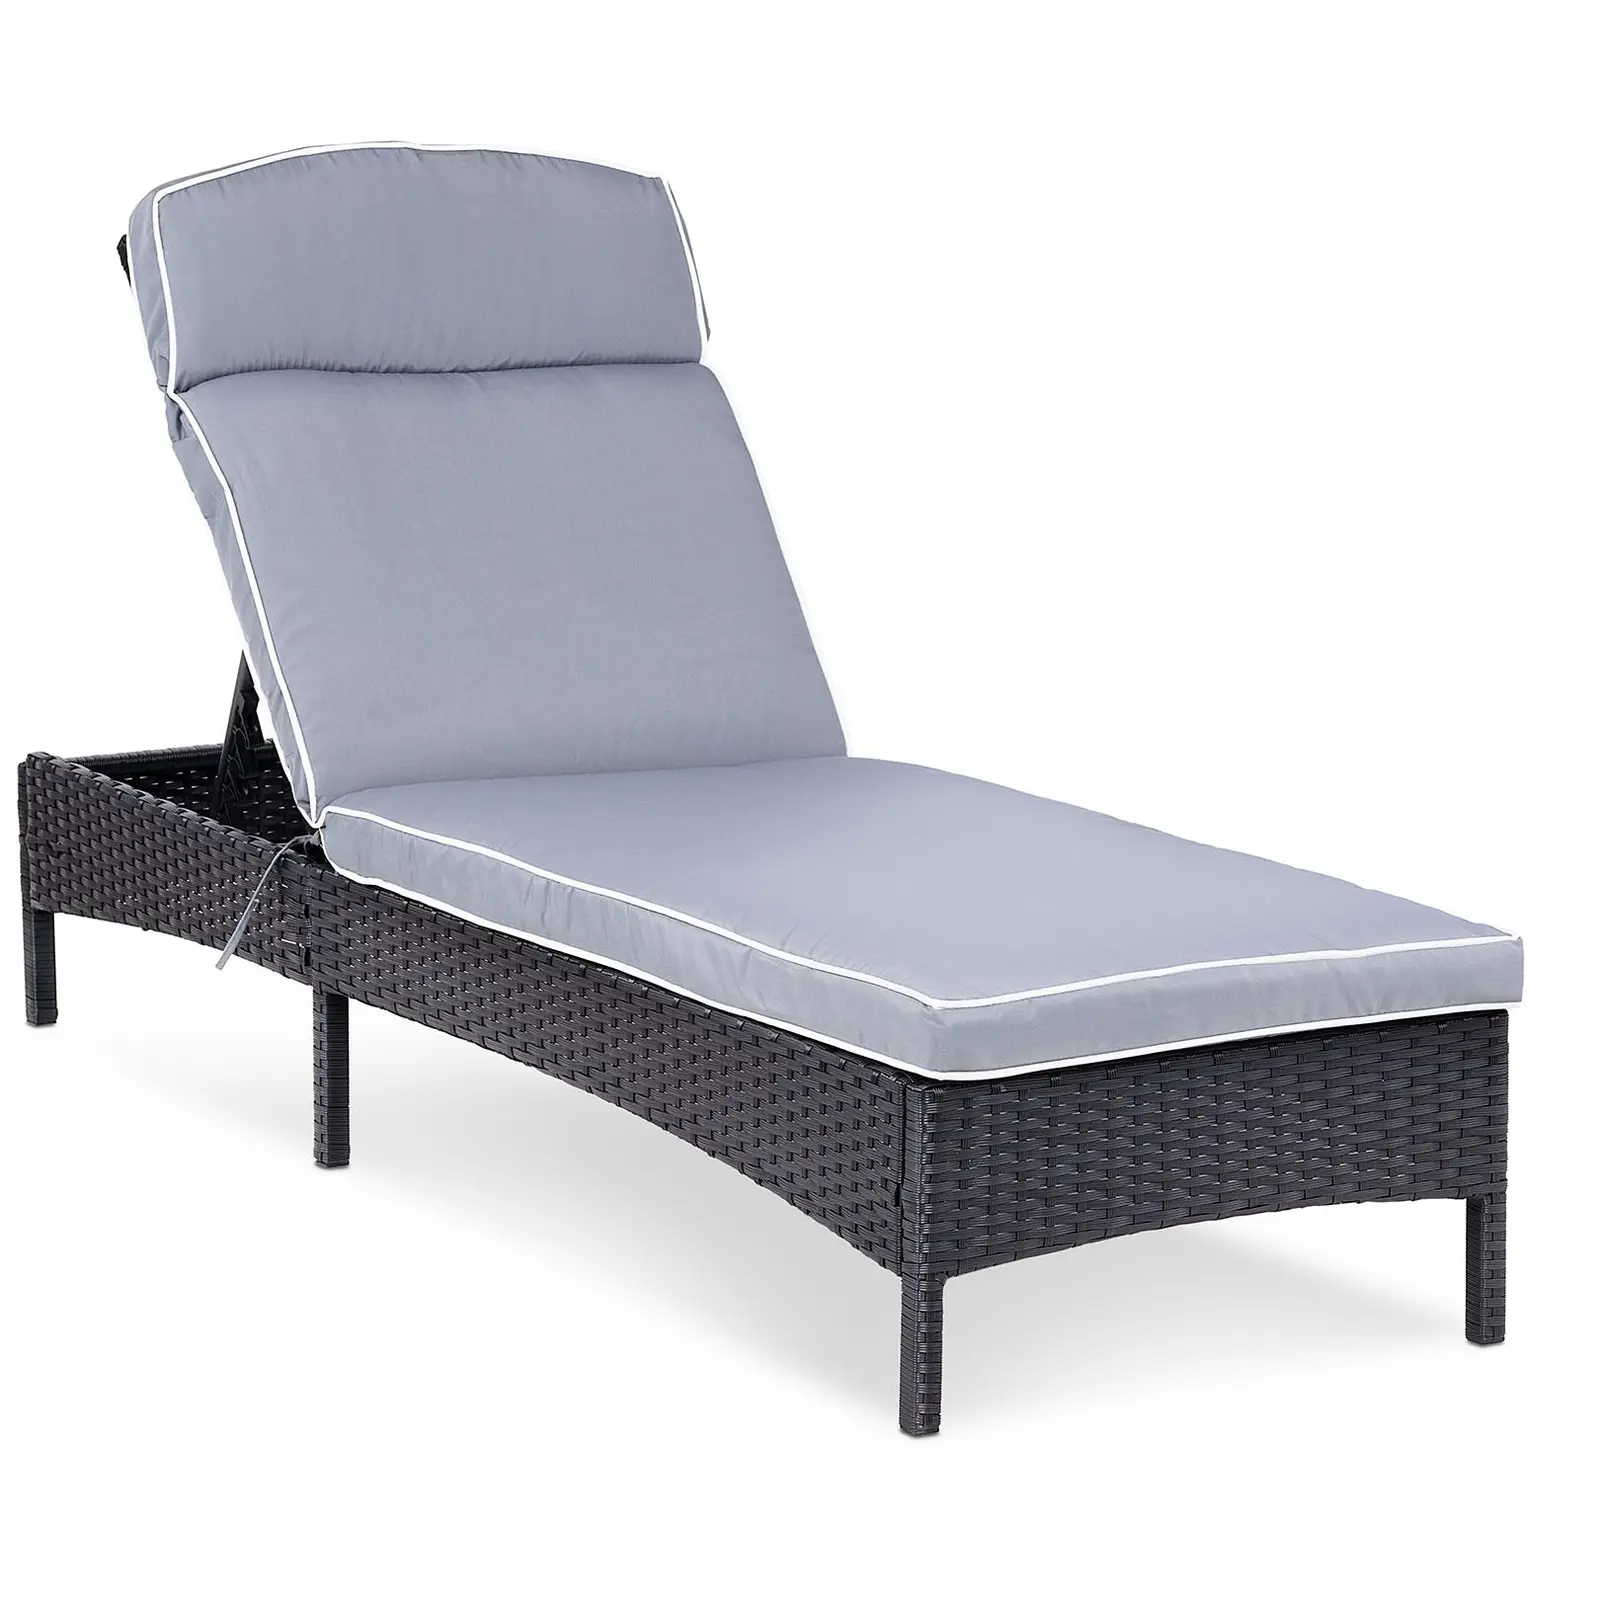 Sunbed - light grey - rattan - adjustable backrest